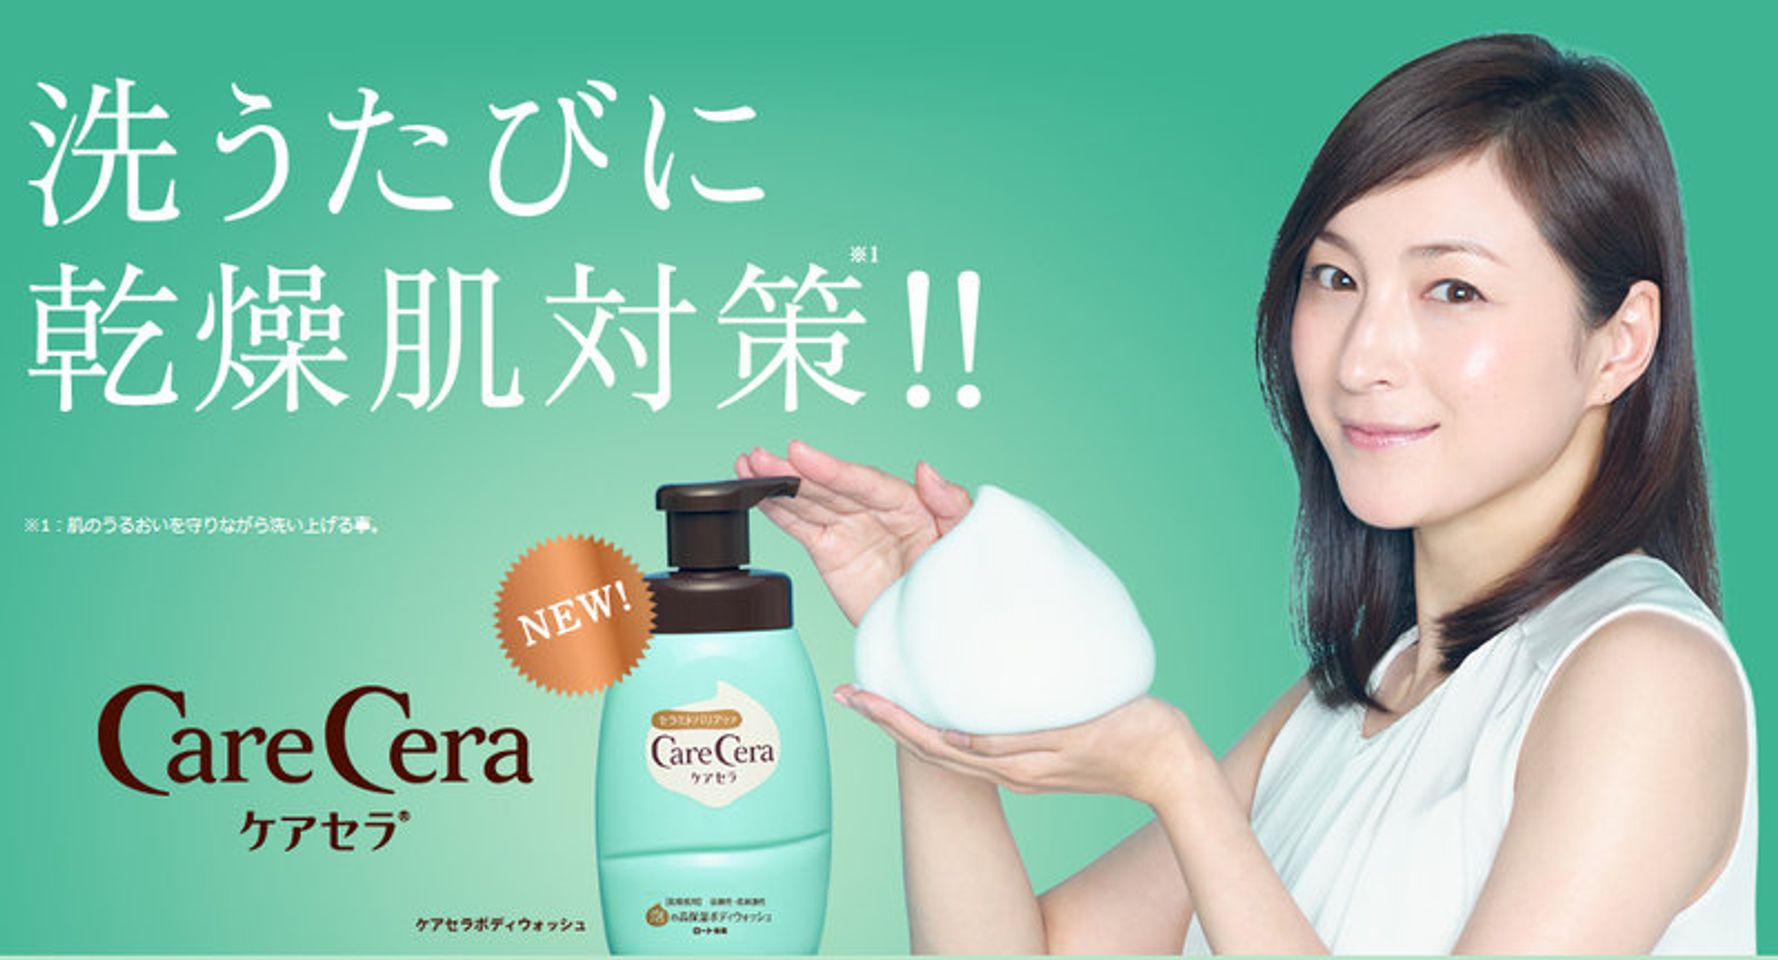 Sữa tắm Care Cera có dạng bọt mịn, nhẹ, với hương thơm nhẹ nhàng tinh khiết